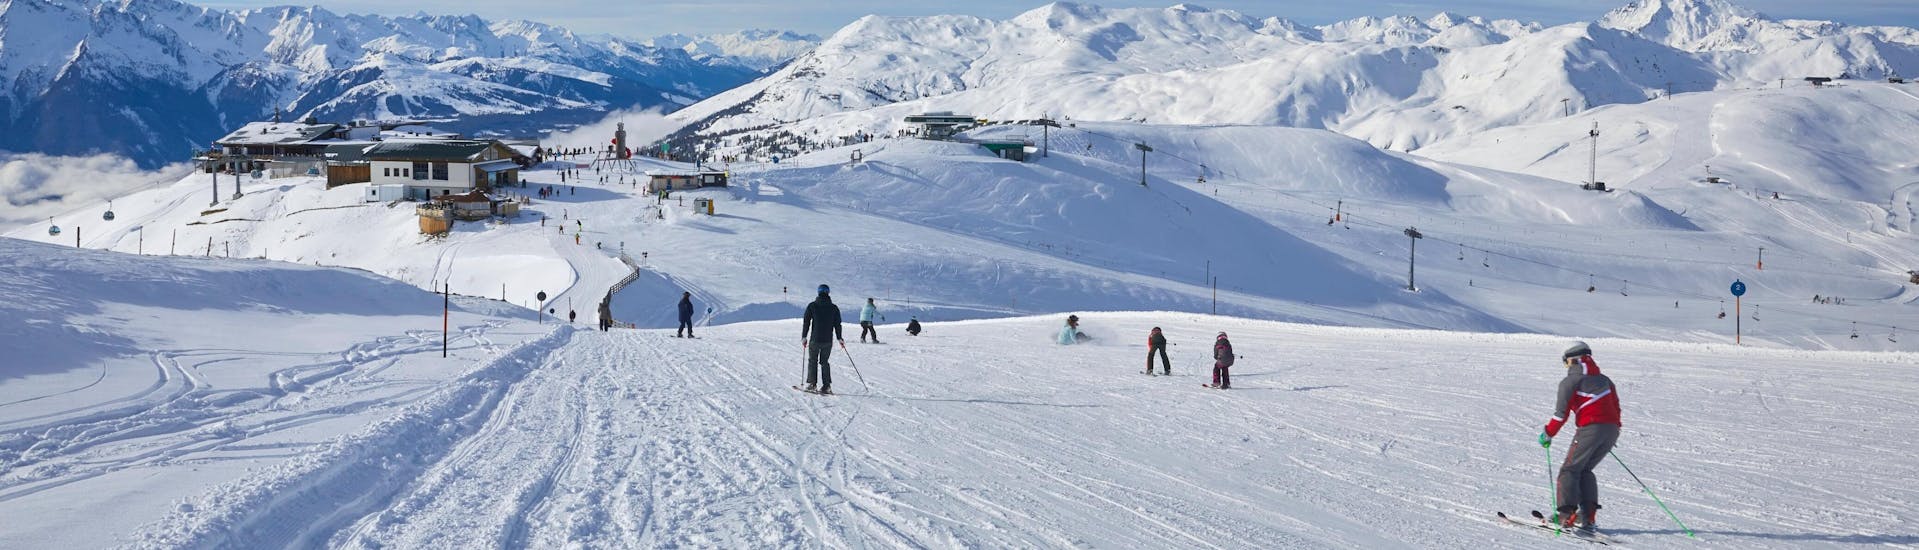 Adultos y niños esquiando en la estación de esquí de Bramberg.